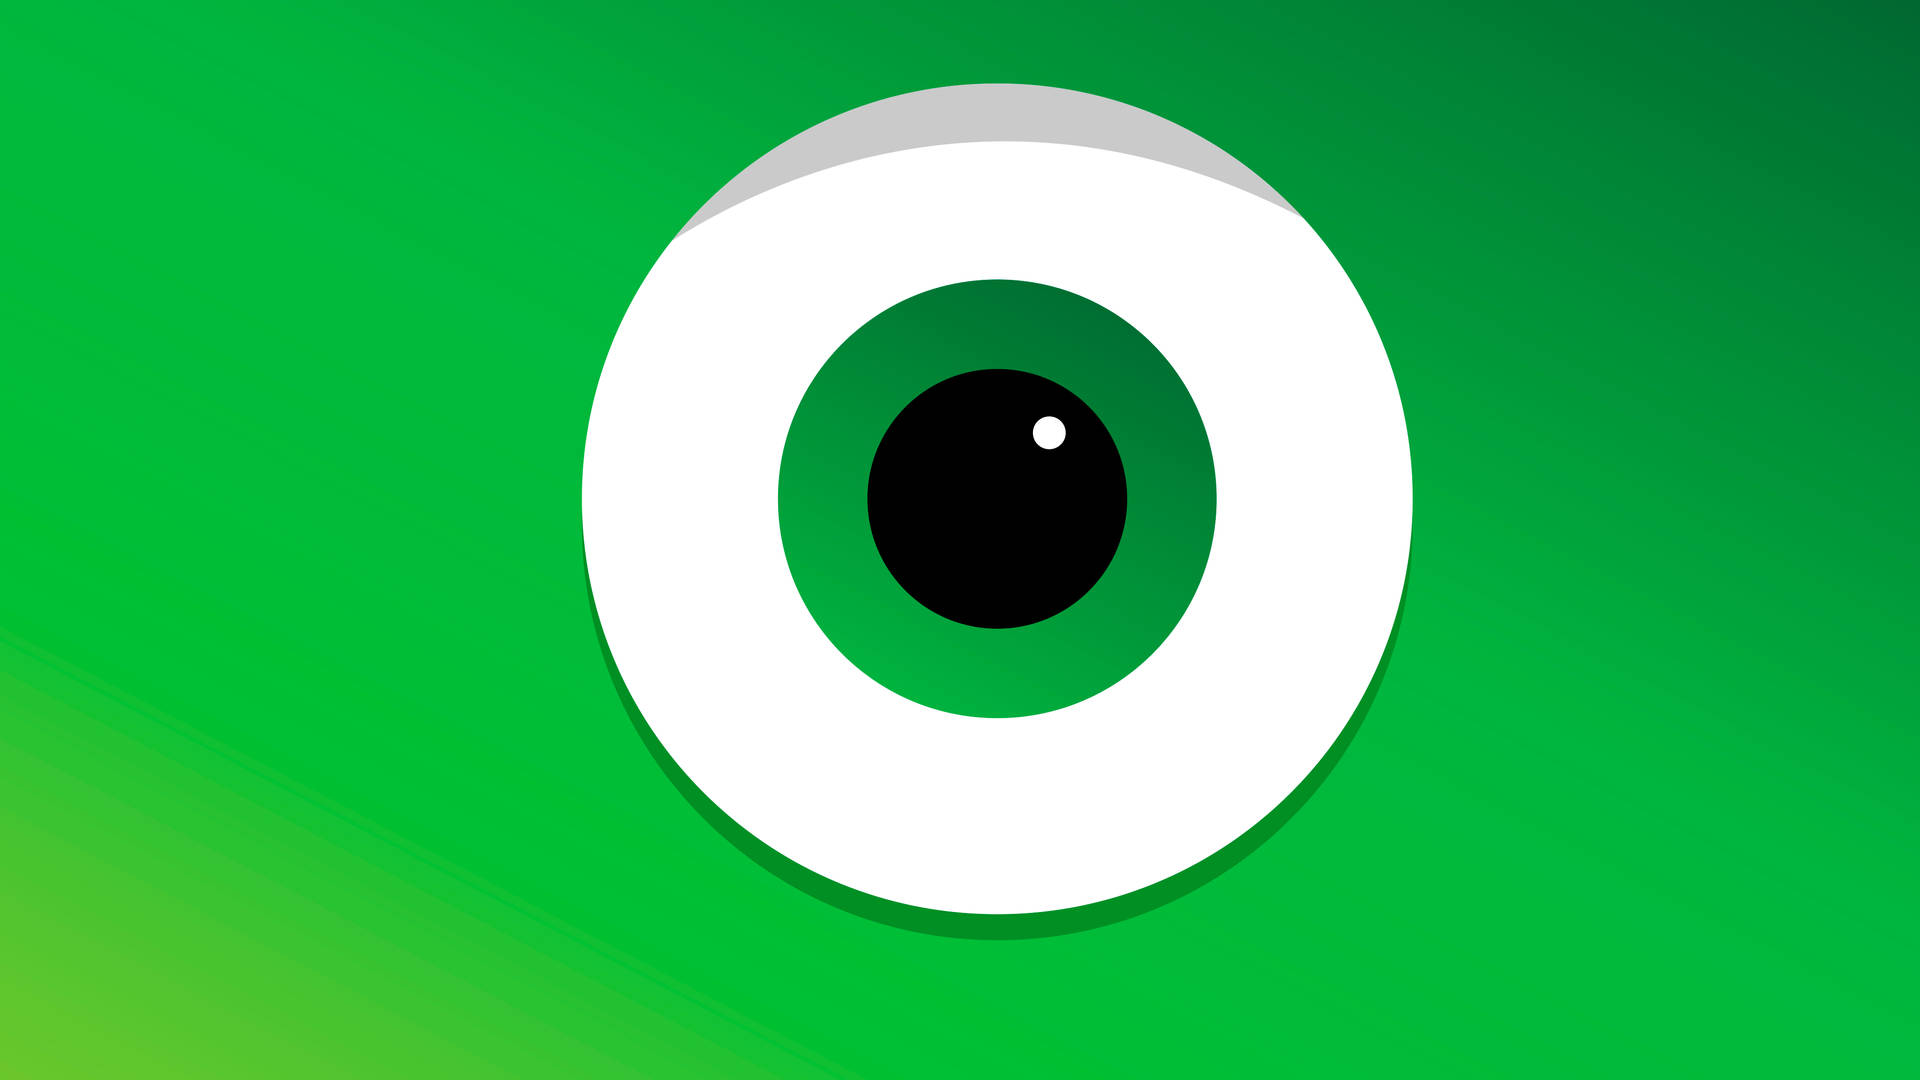 Mike Wazowski Iconic Green Eyes Background